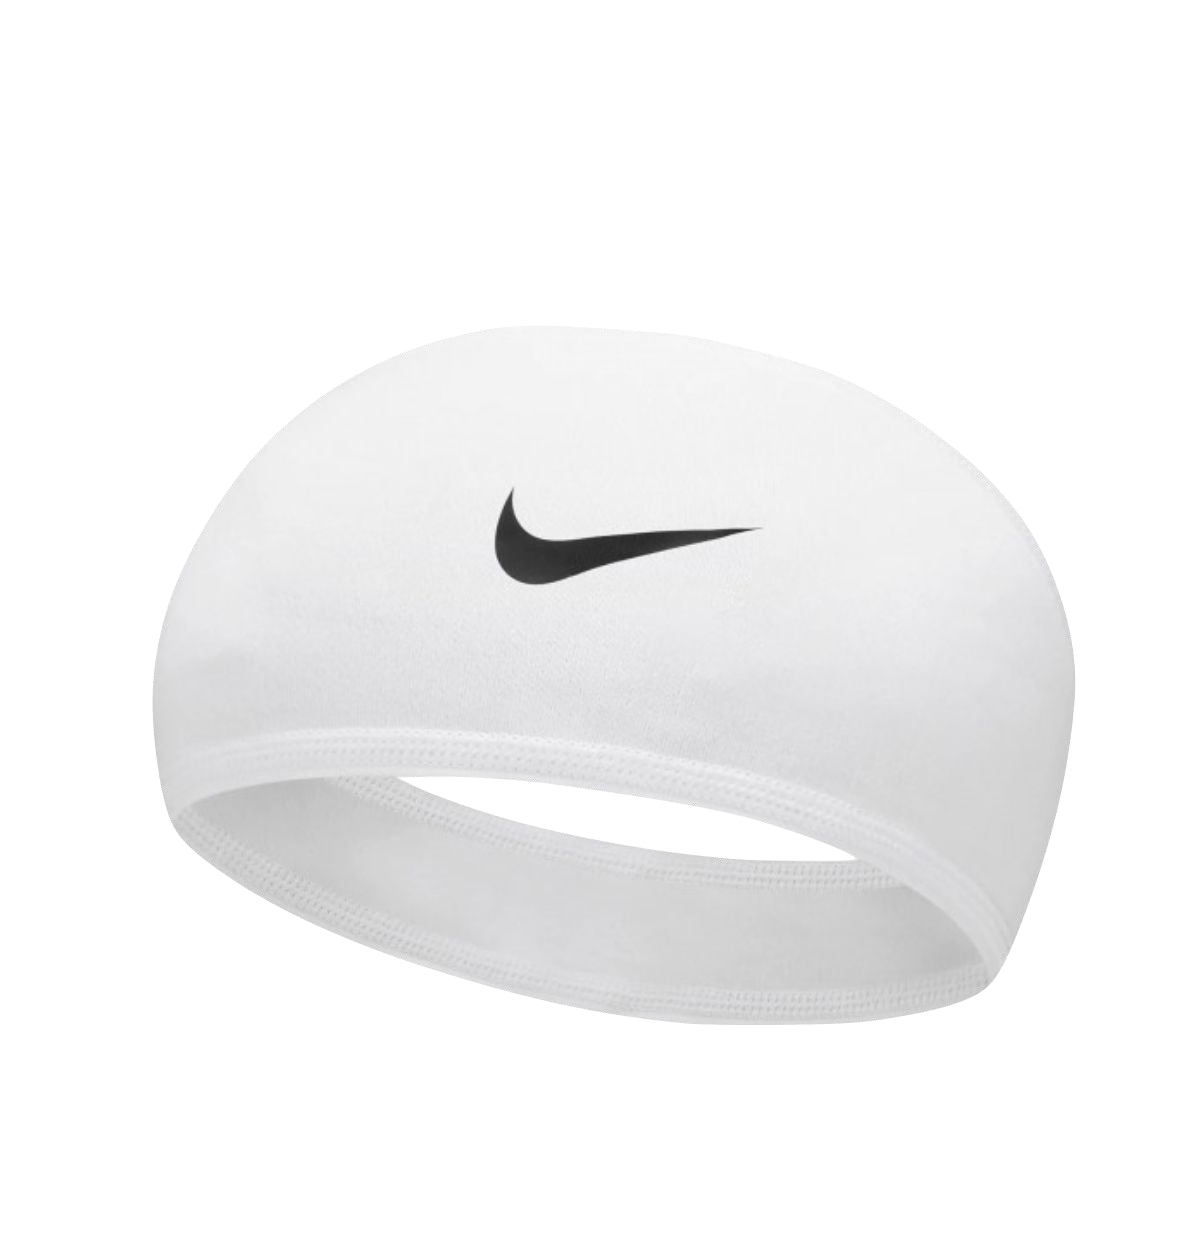 Banda Nike Pro Skull Wrap 5.0 Unitalla